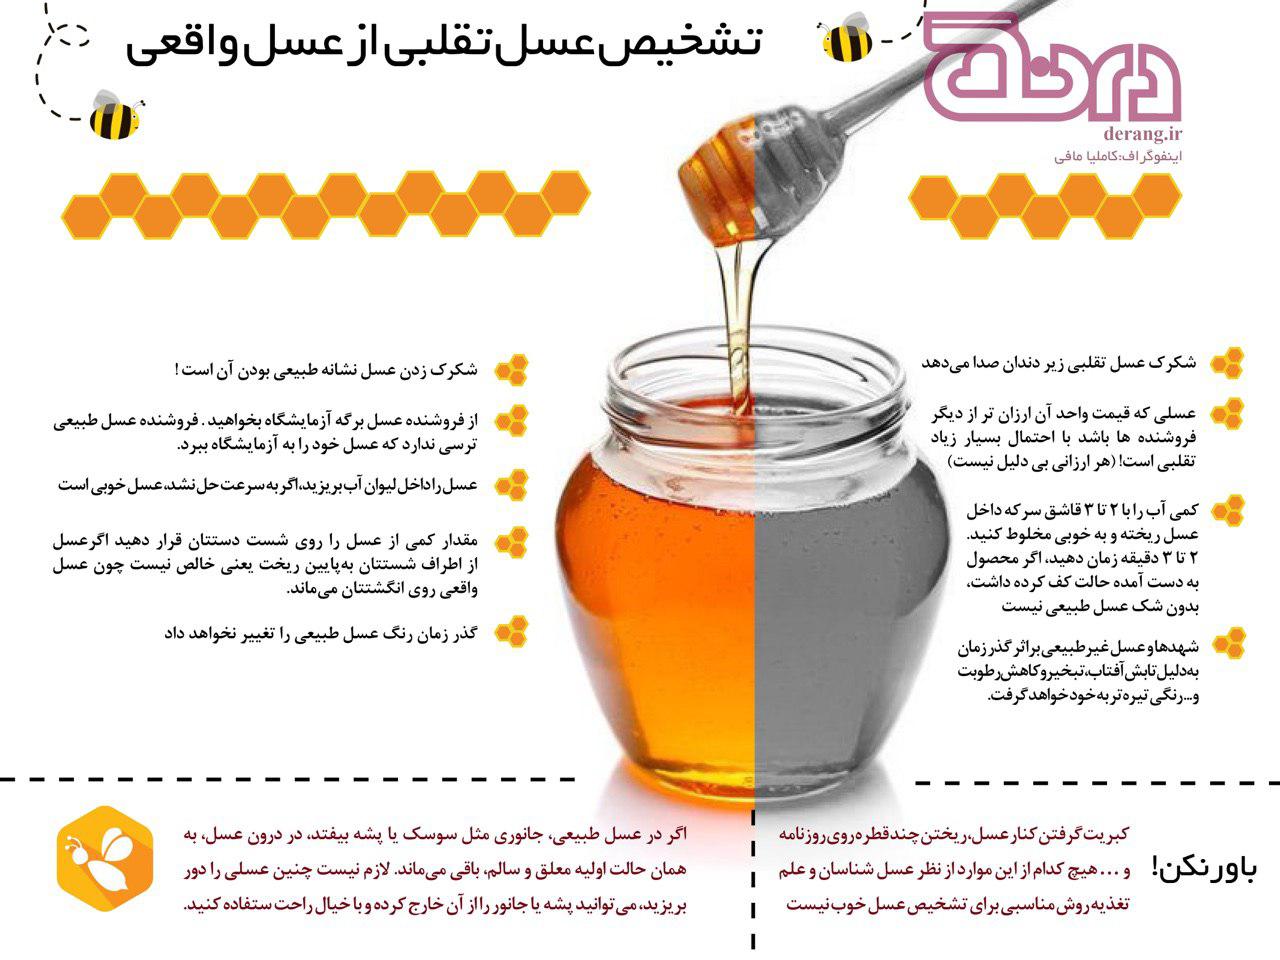 روش تشخيص عسل طبيعي از تقلبي
